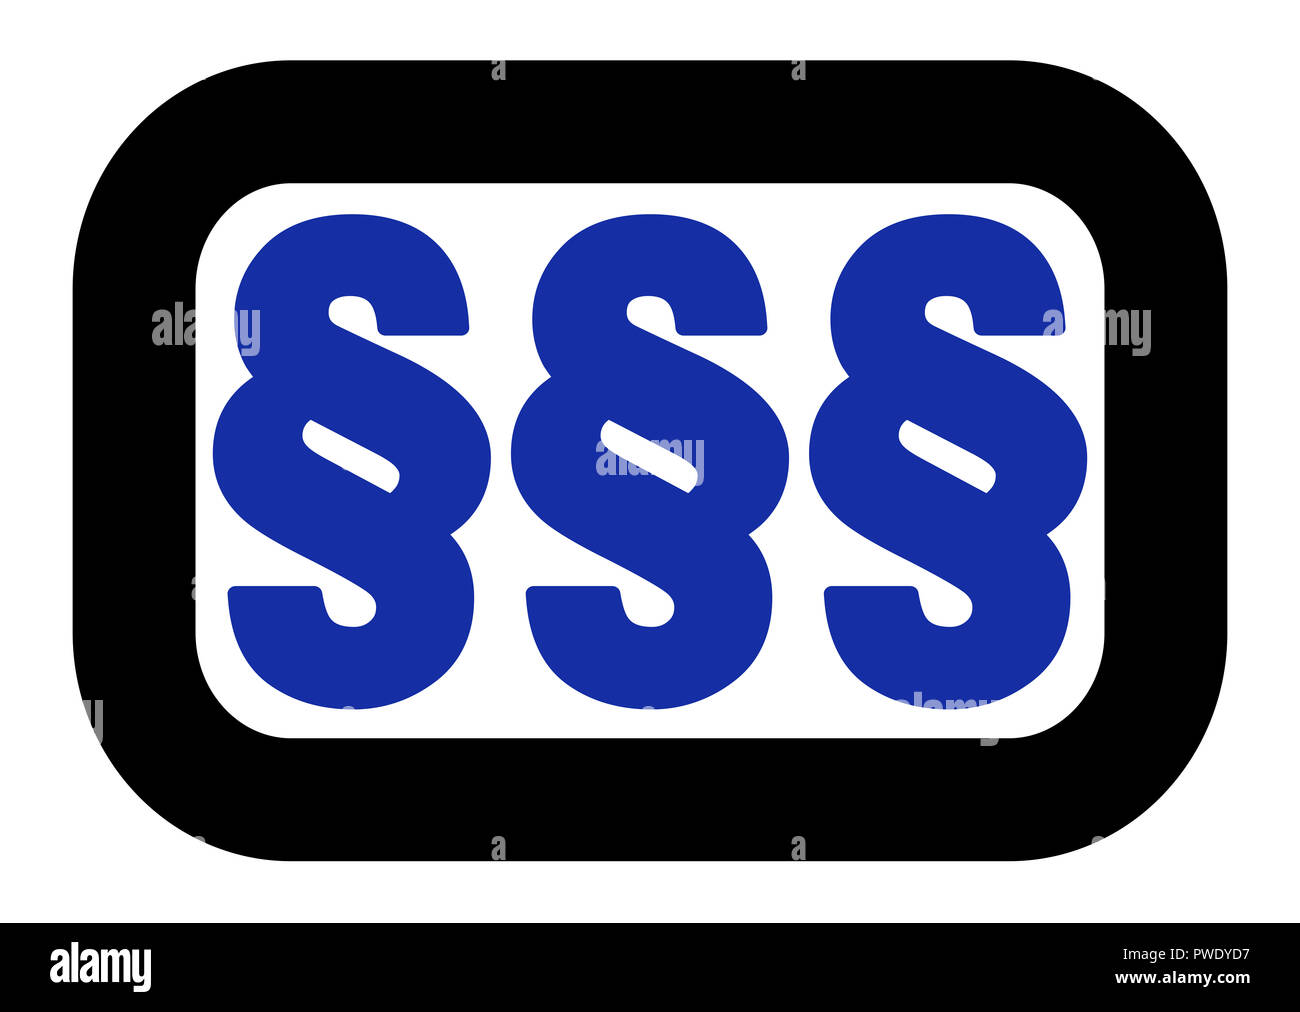 Paragraphe inscrivez-logo, trois symboles bleu arrondi, cadre noir. Simple illustration sur fond blanc. Banque D'Images